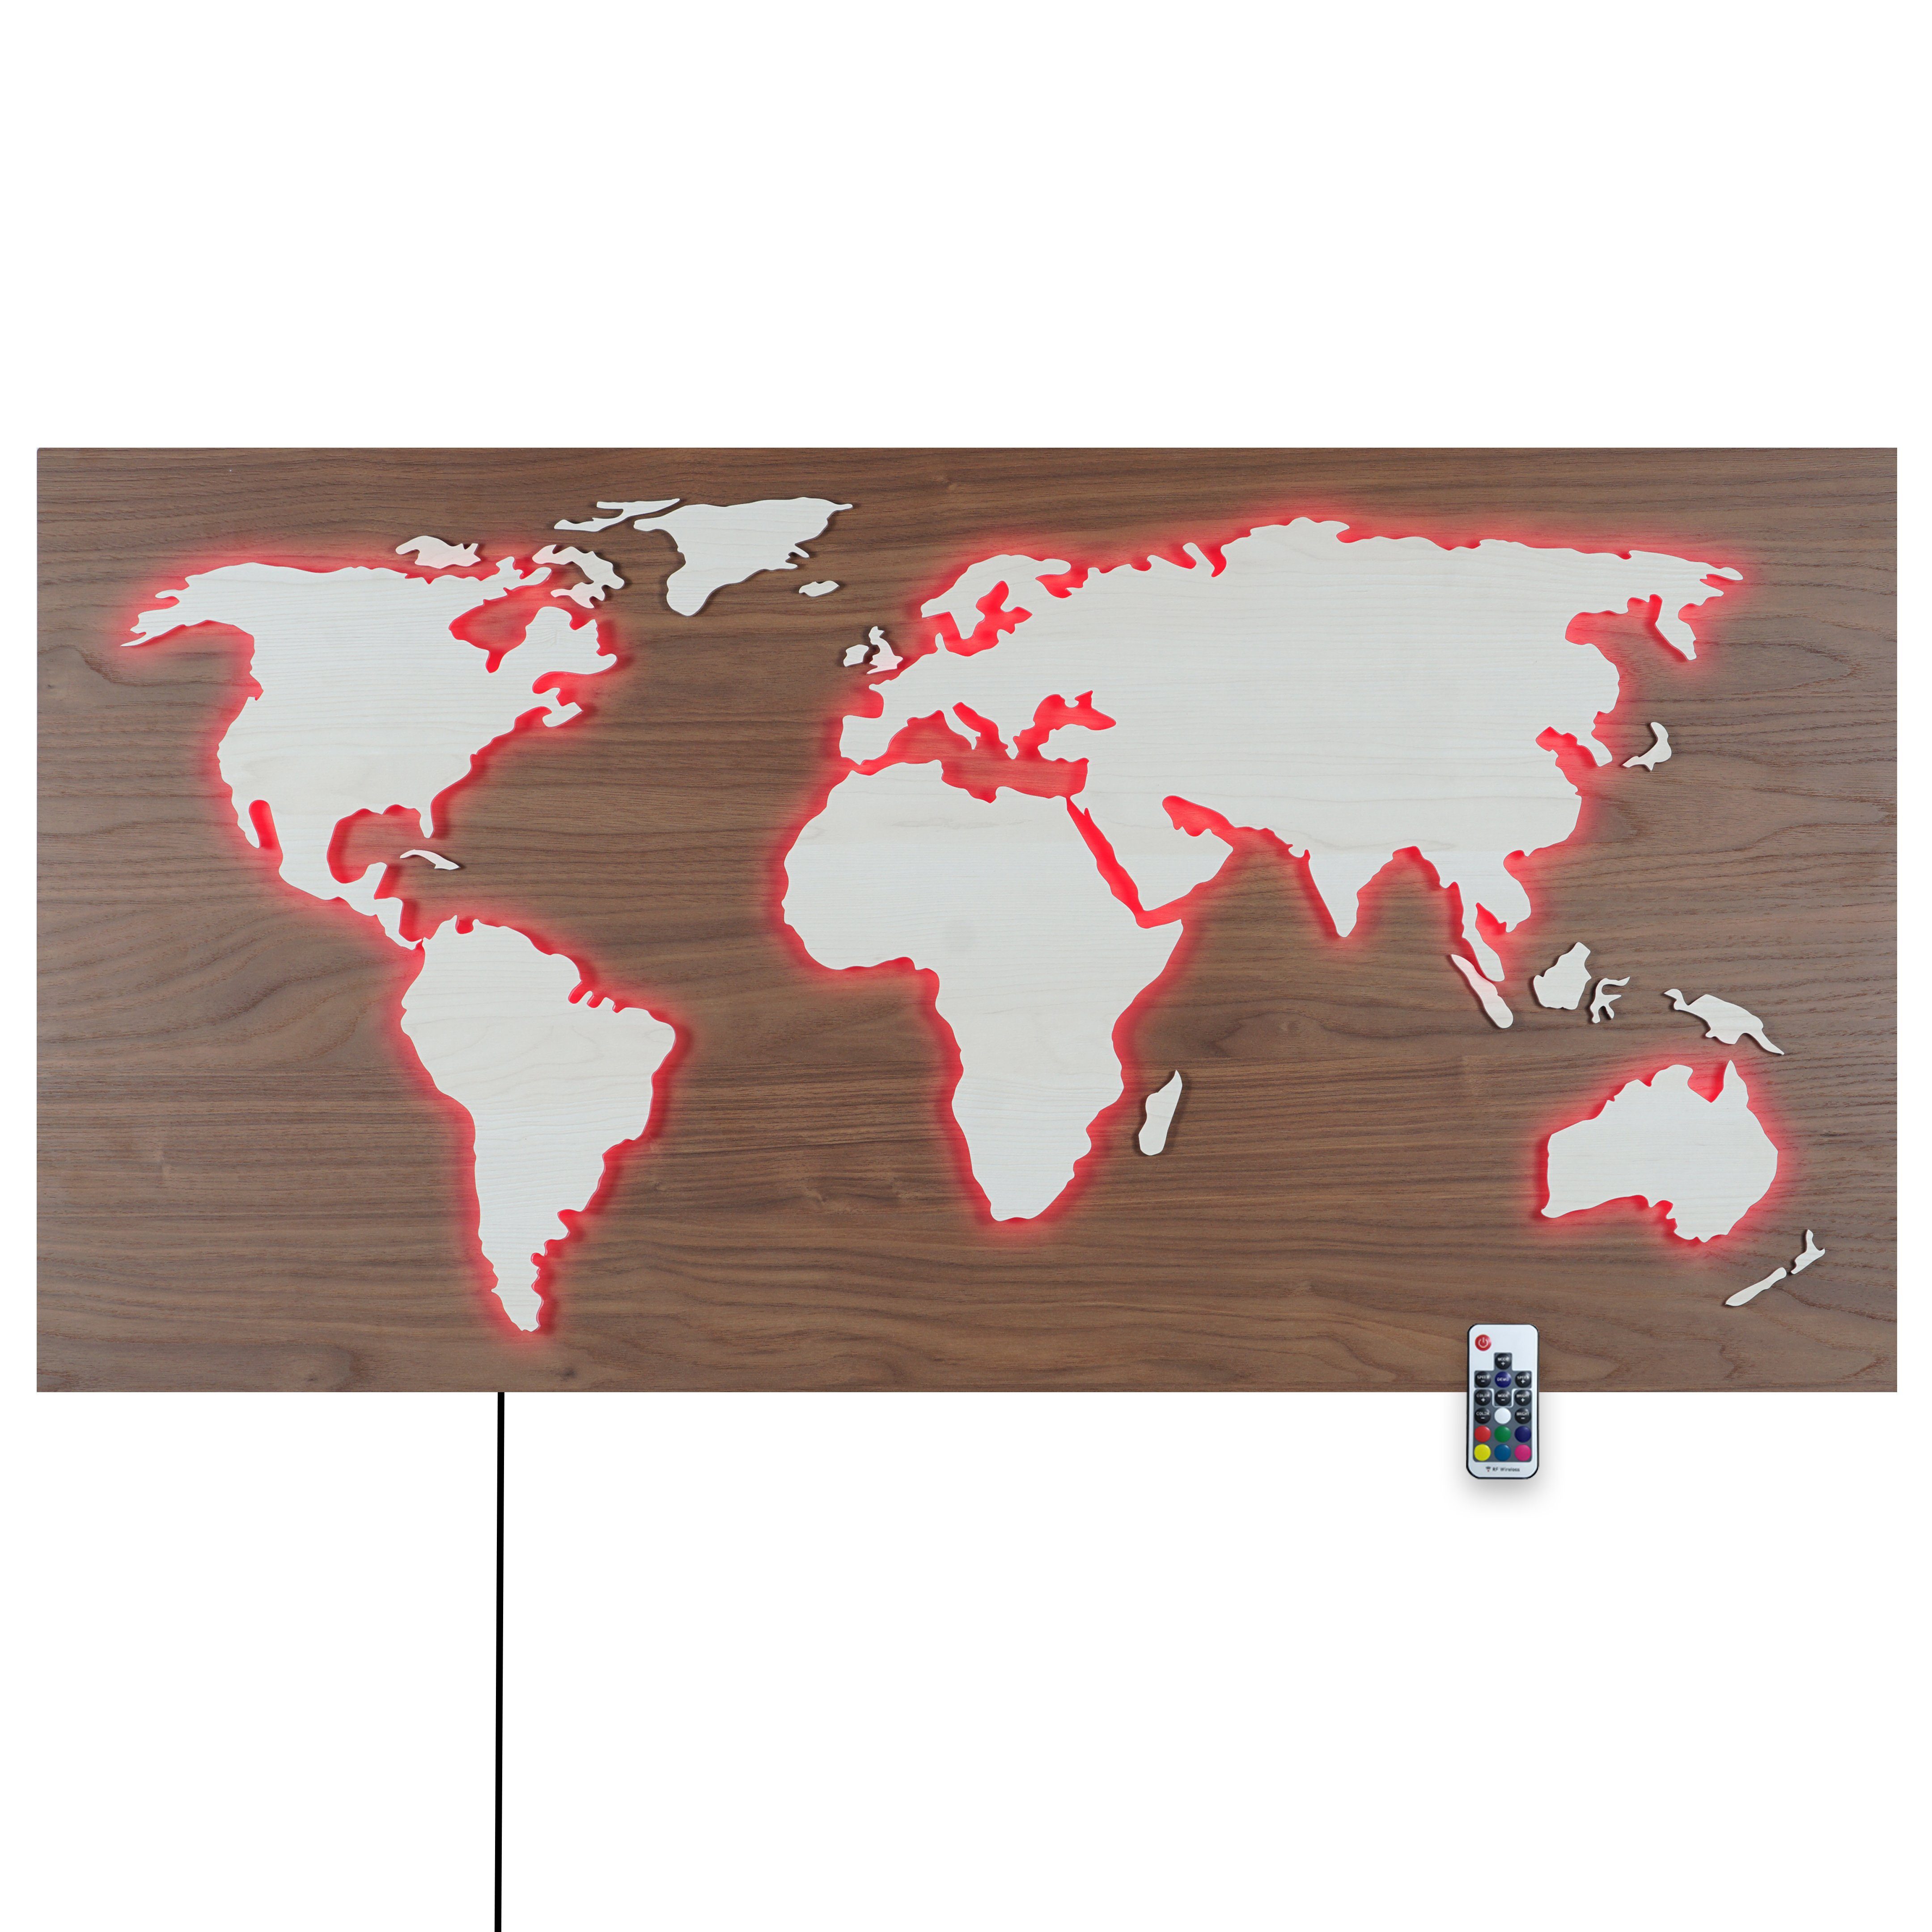 Kontinente über LEDs mit Länder MAPPA 3D-Lichtbild, HOLZ-Optik Rückplatte 110x57cm umleuchtet LUX Weiss Braun, Rustikale Wanddekoobjekt Deko bunt Weltkarte ZENLED Ahorn Walnuss steuerbaren Fernbedienung - RGB